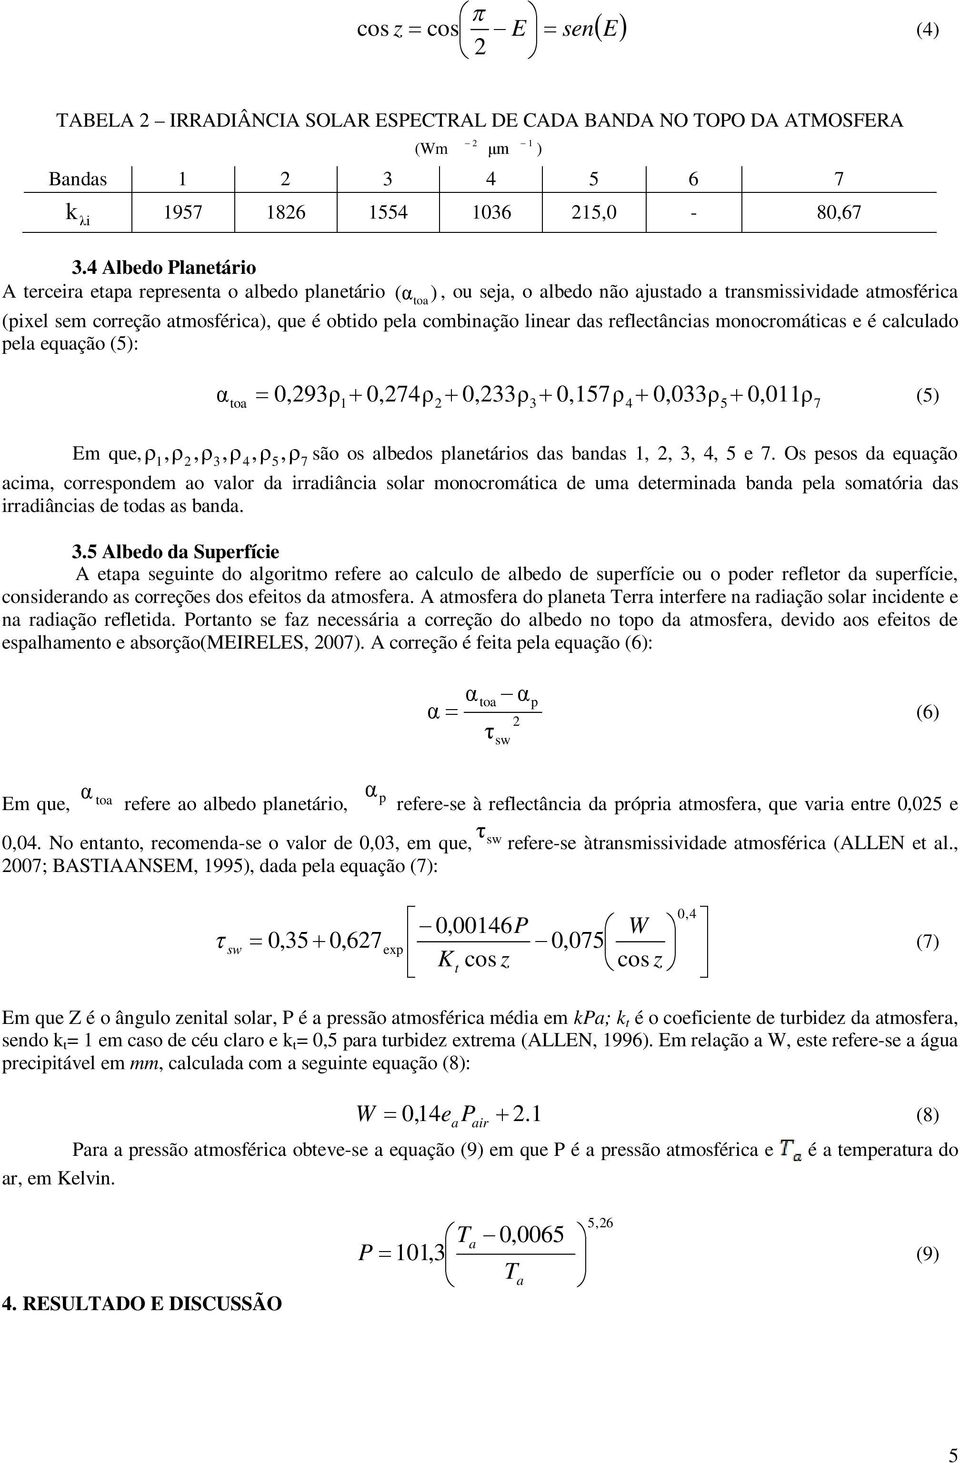 combinação linear das reflectâncias monocromáticas e é calculado pela equação (5): ) α toa 0,293ρ 0,274ρ 0,233ρ 0,157ρ 0,033ρ 0,011ρ (5) 1 2 3 4 5 7 Em que, ρ1,ρ2,ρ3,ρ 4,ρ5, ρ7 são os albedos